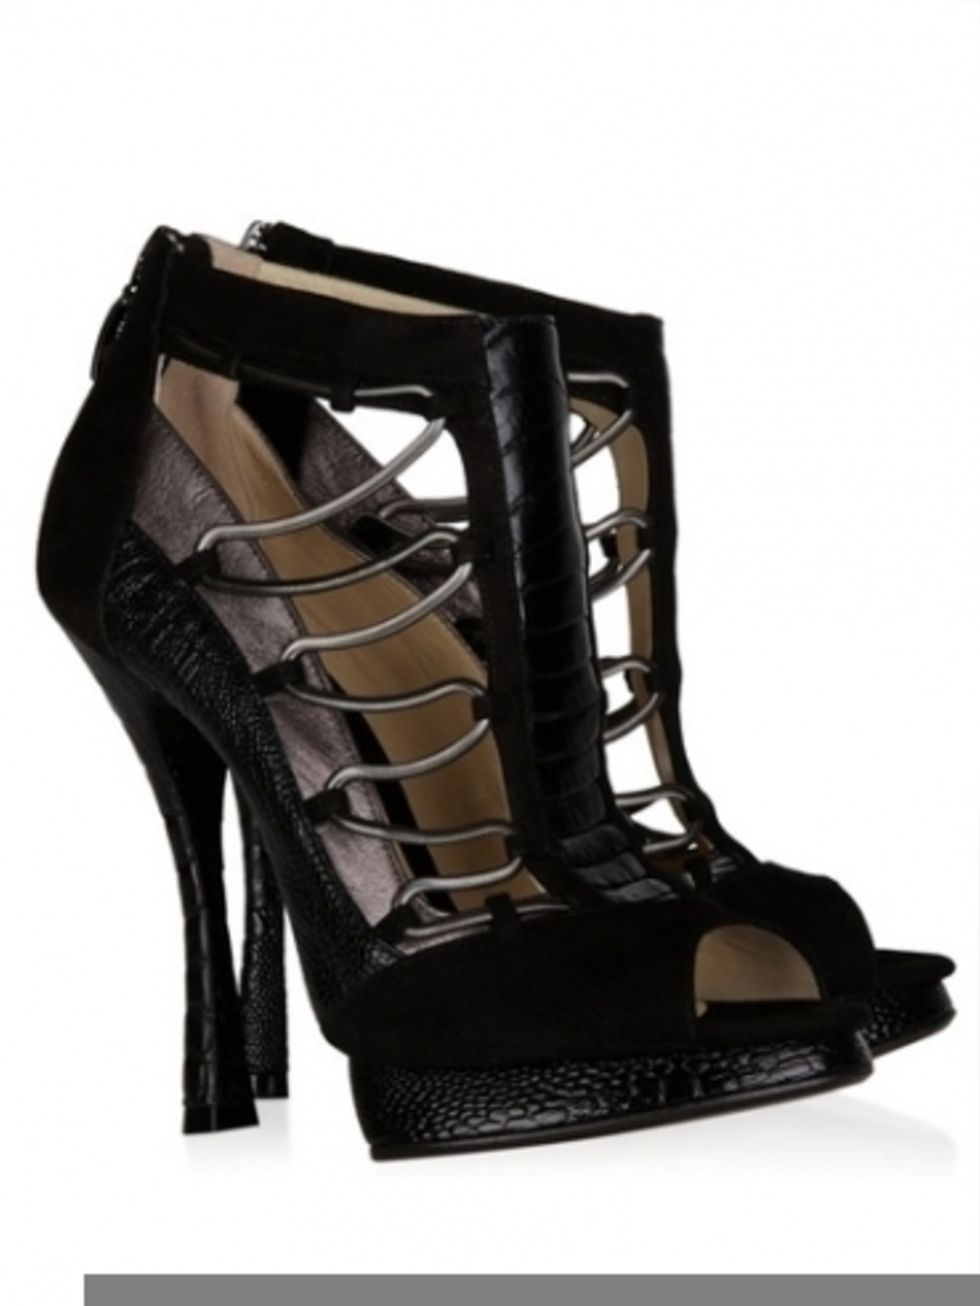 Footwear, Product, Brown, High heels, Sandal, Black, Tan, Foot, Beige, Basic pump, 